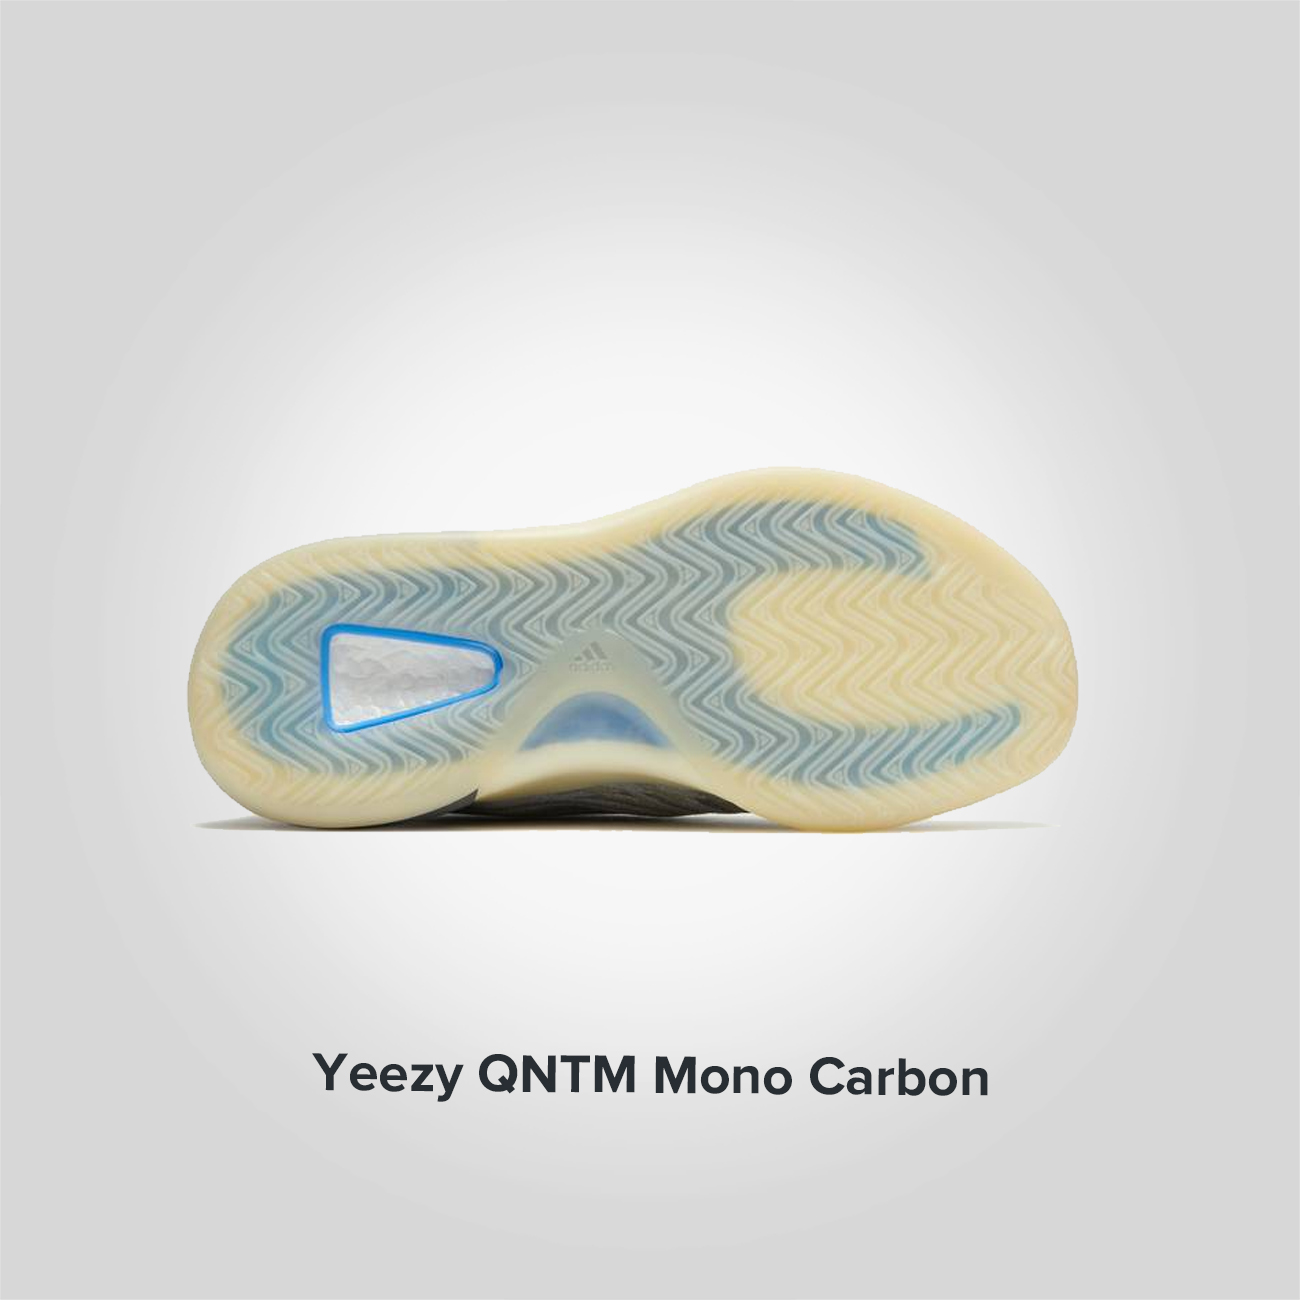 Yeezy QNTM Mono Carbon